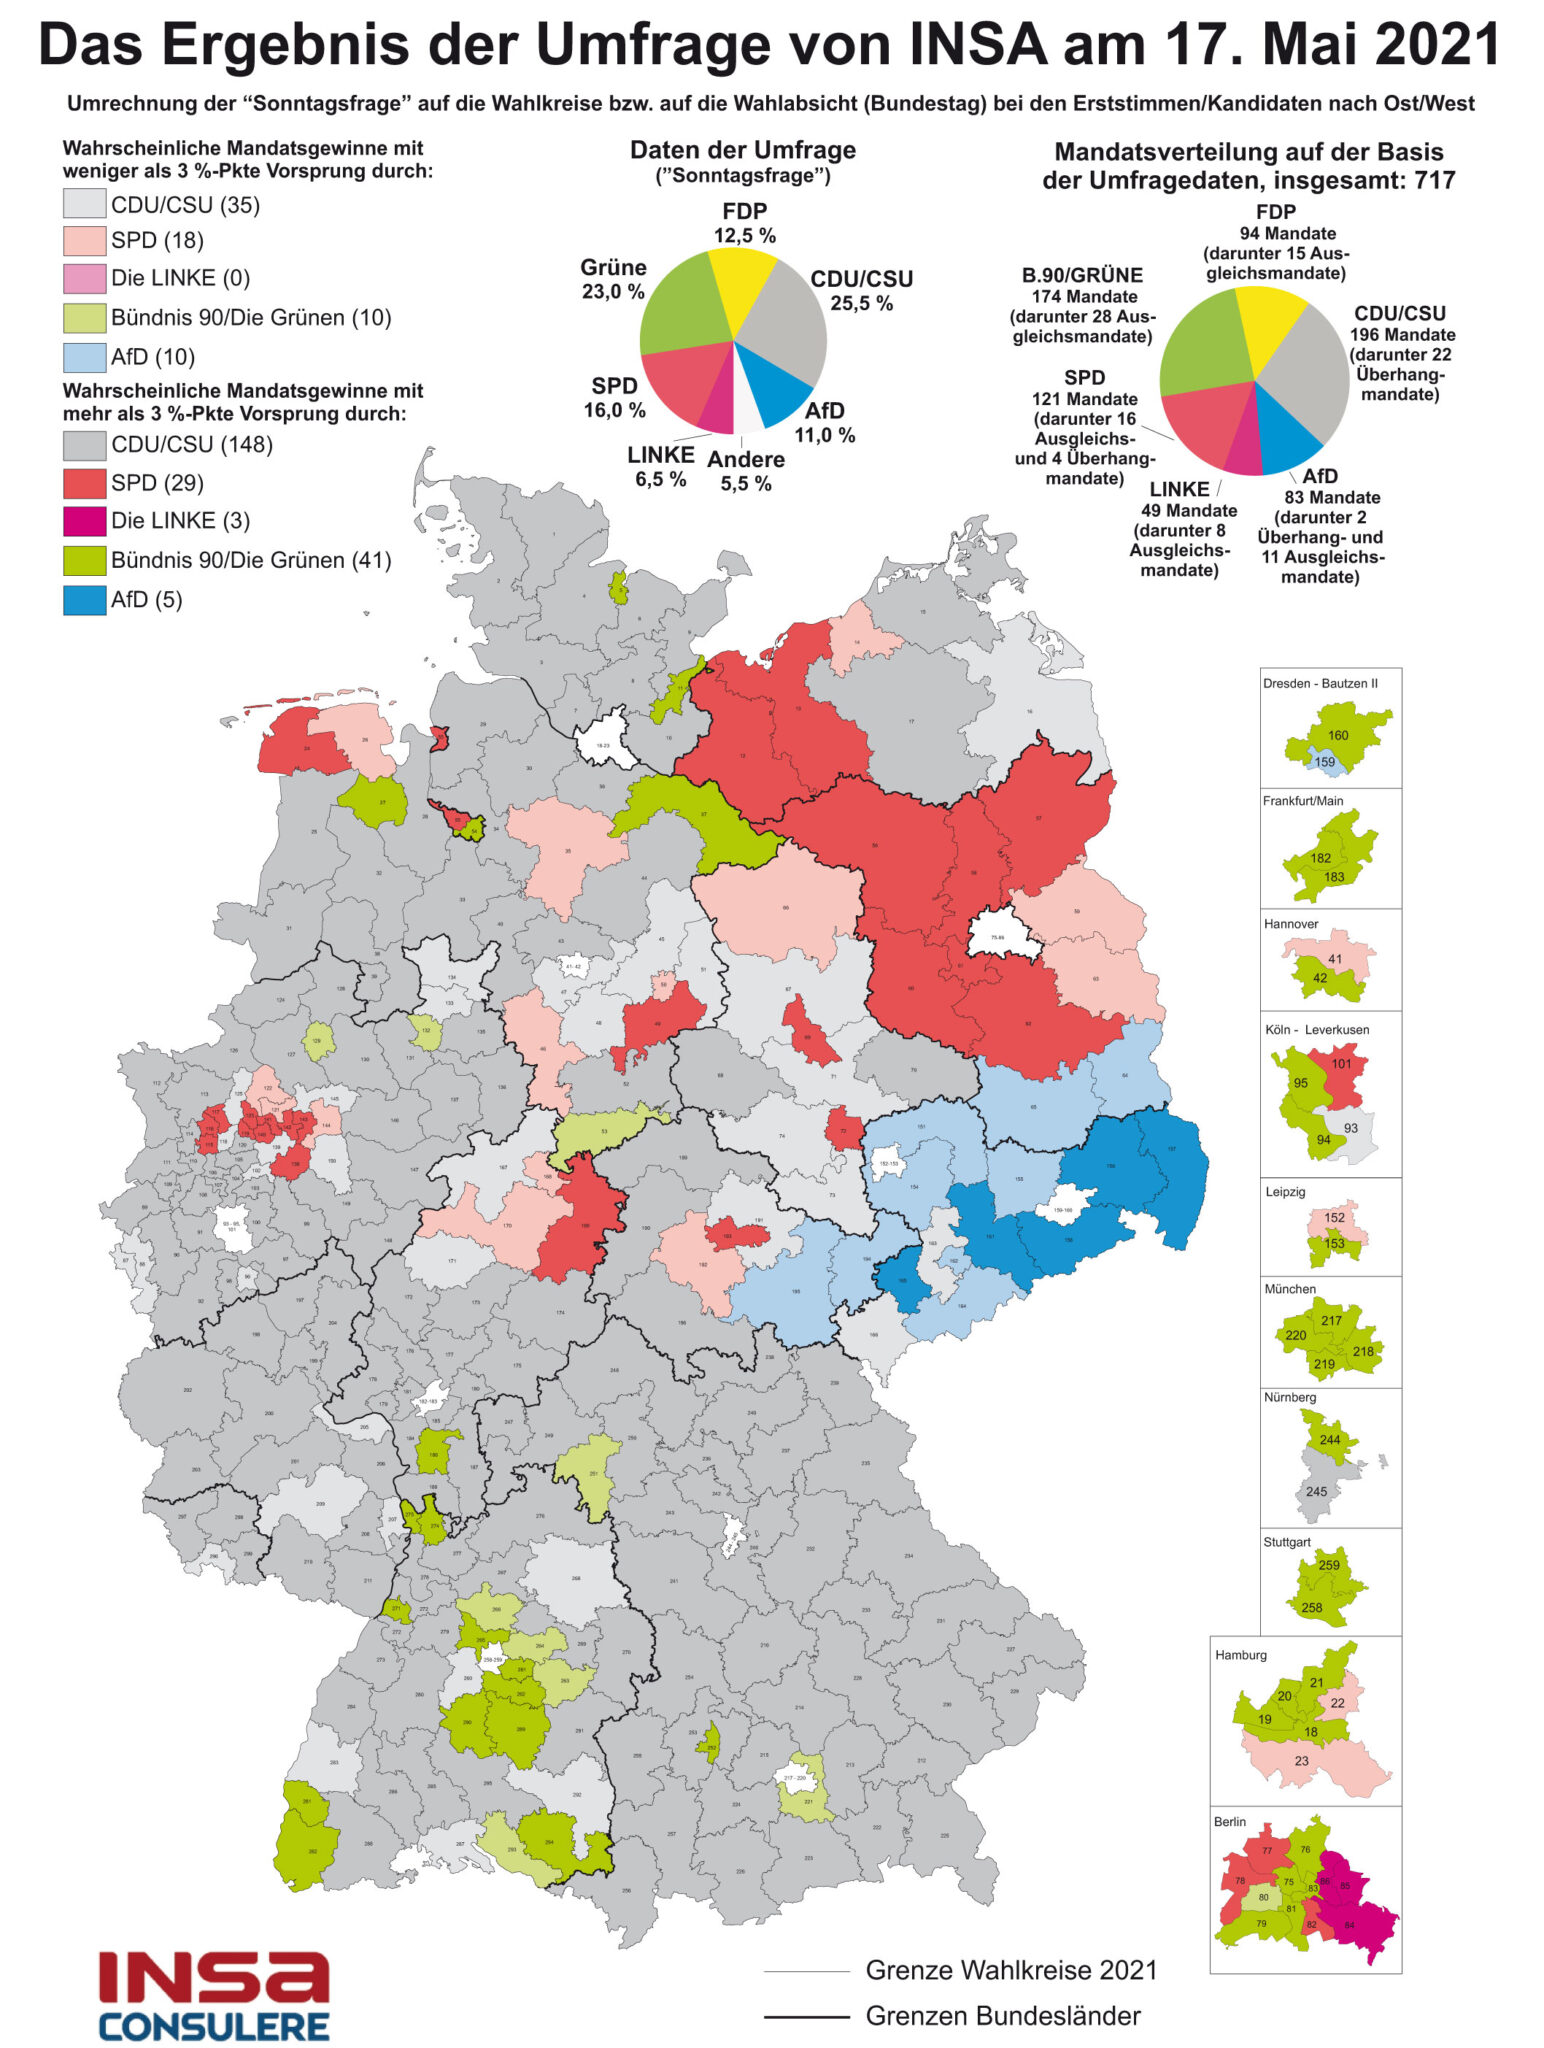 Archiv Wahlkreiskarte - INSA-CONSULERE